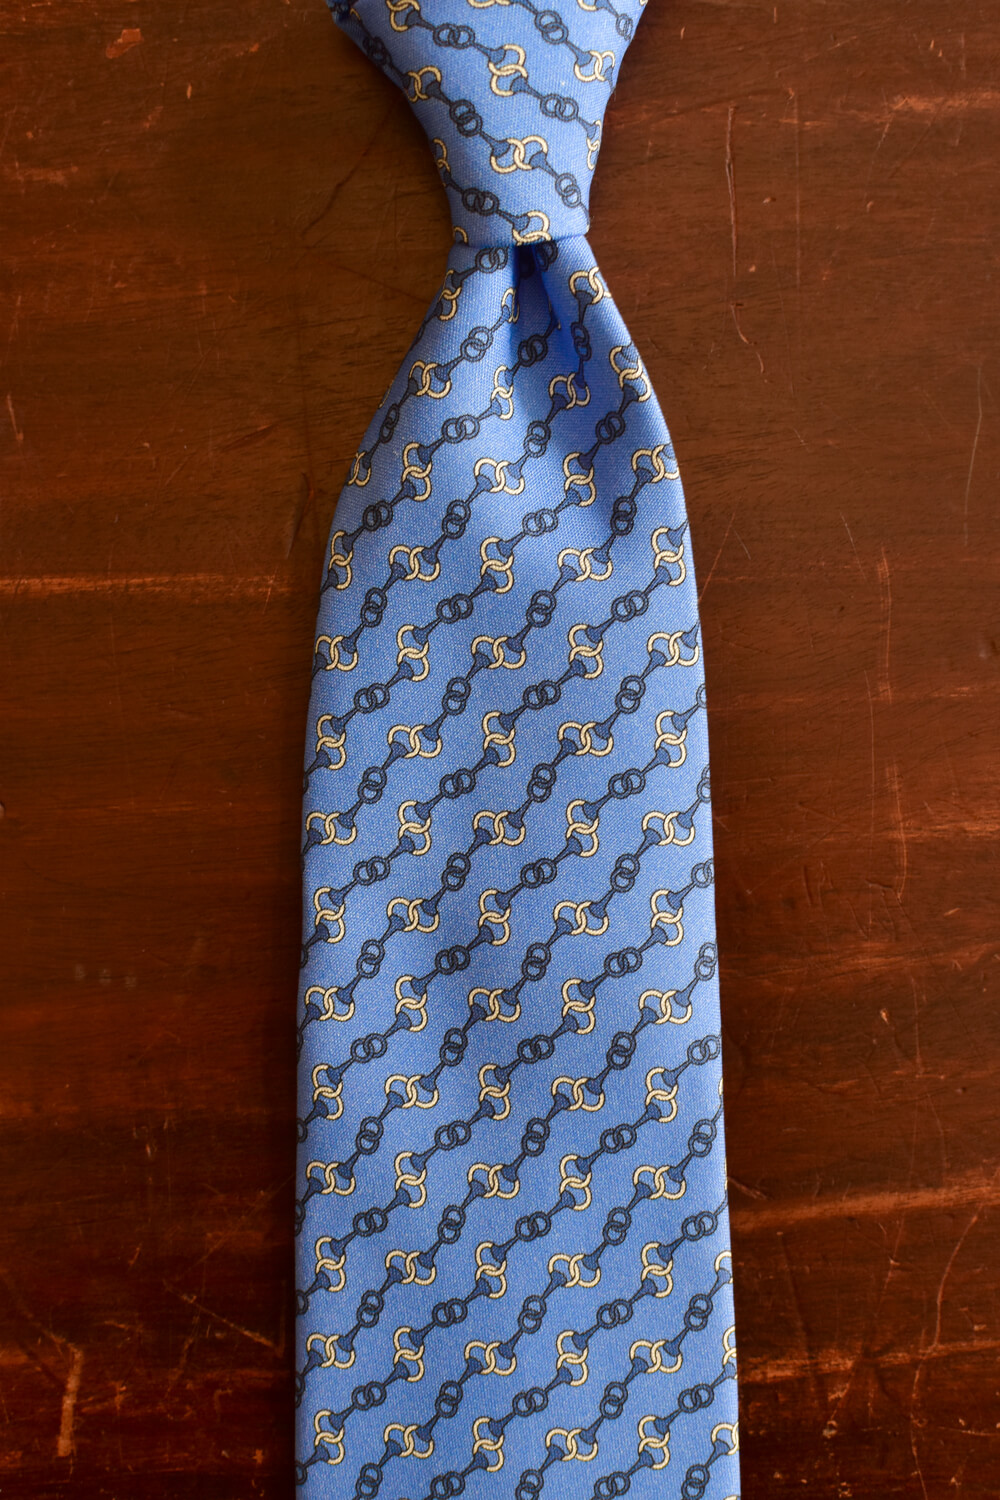 Cravate bleu ciel imprimé chainettes Calabrese